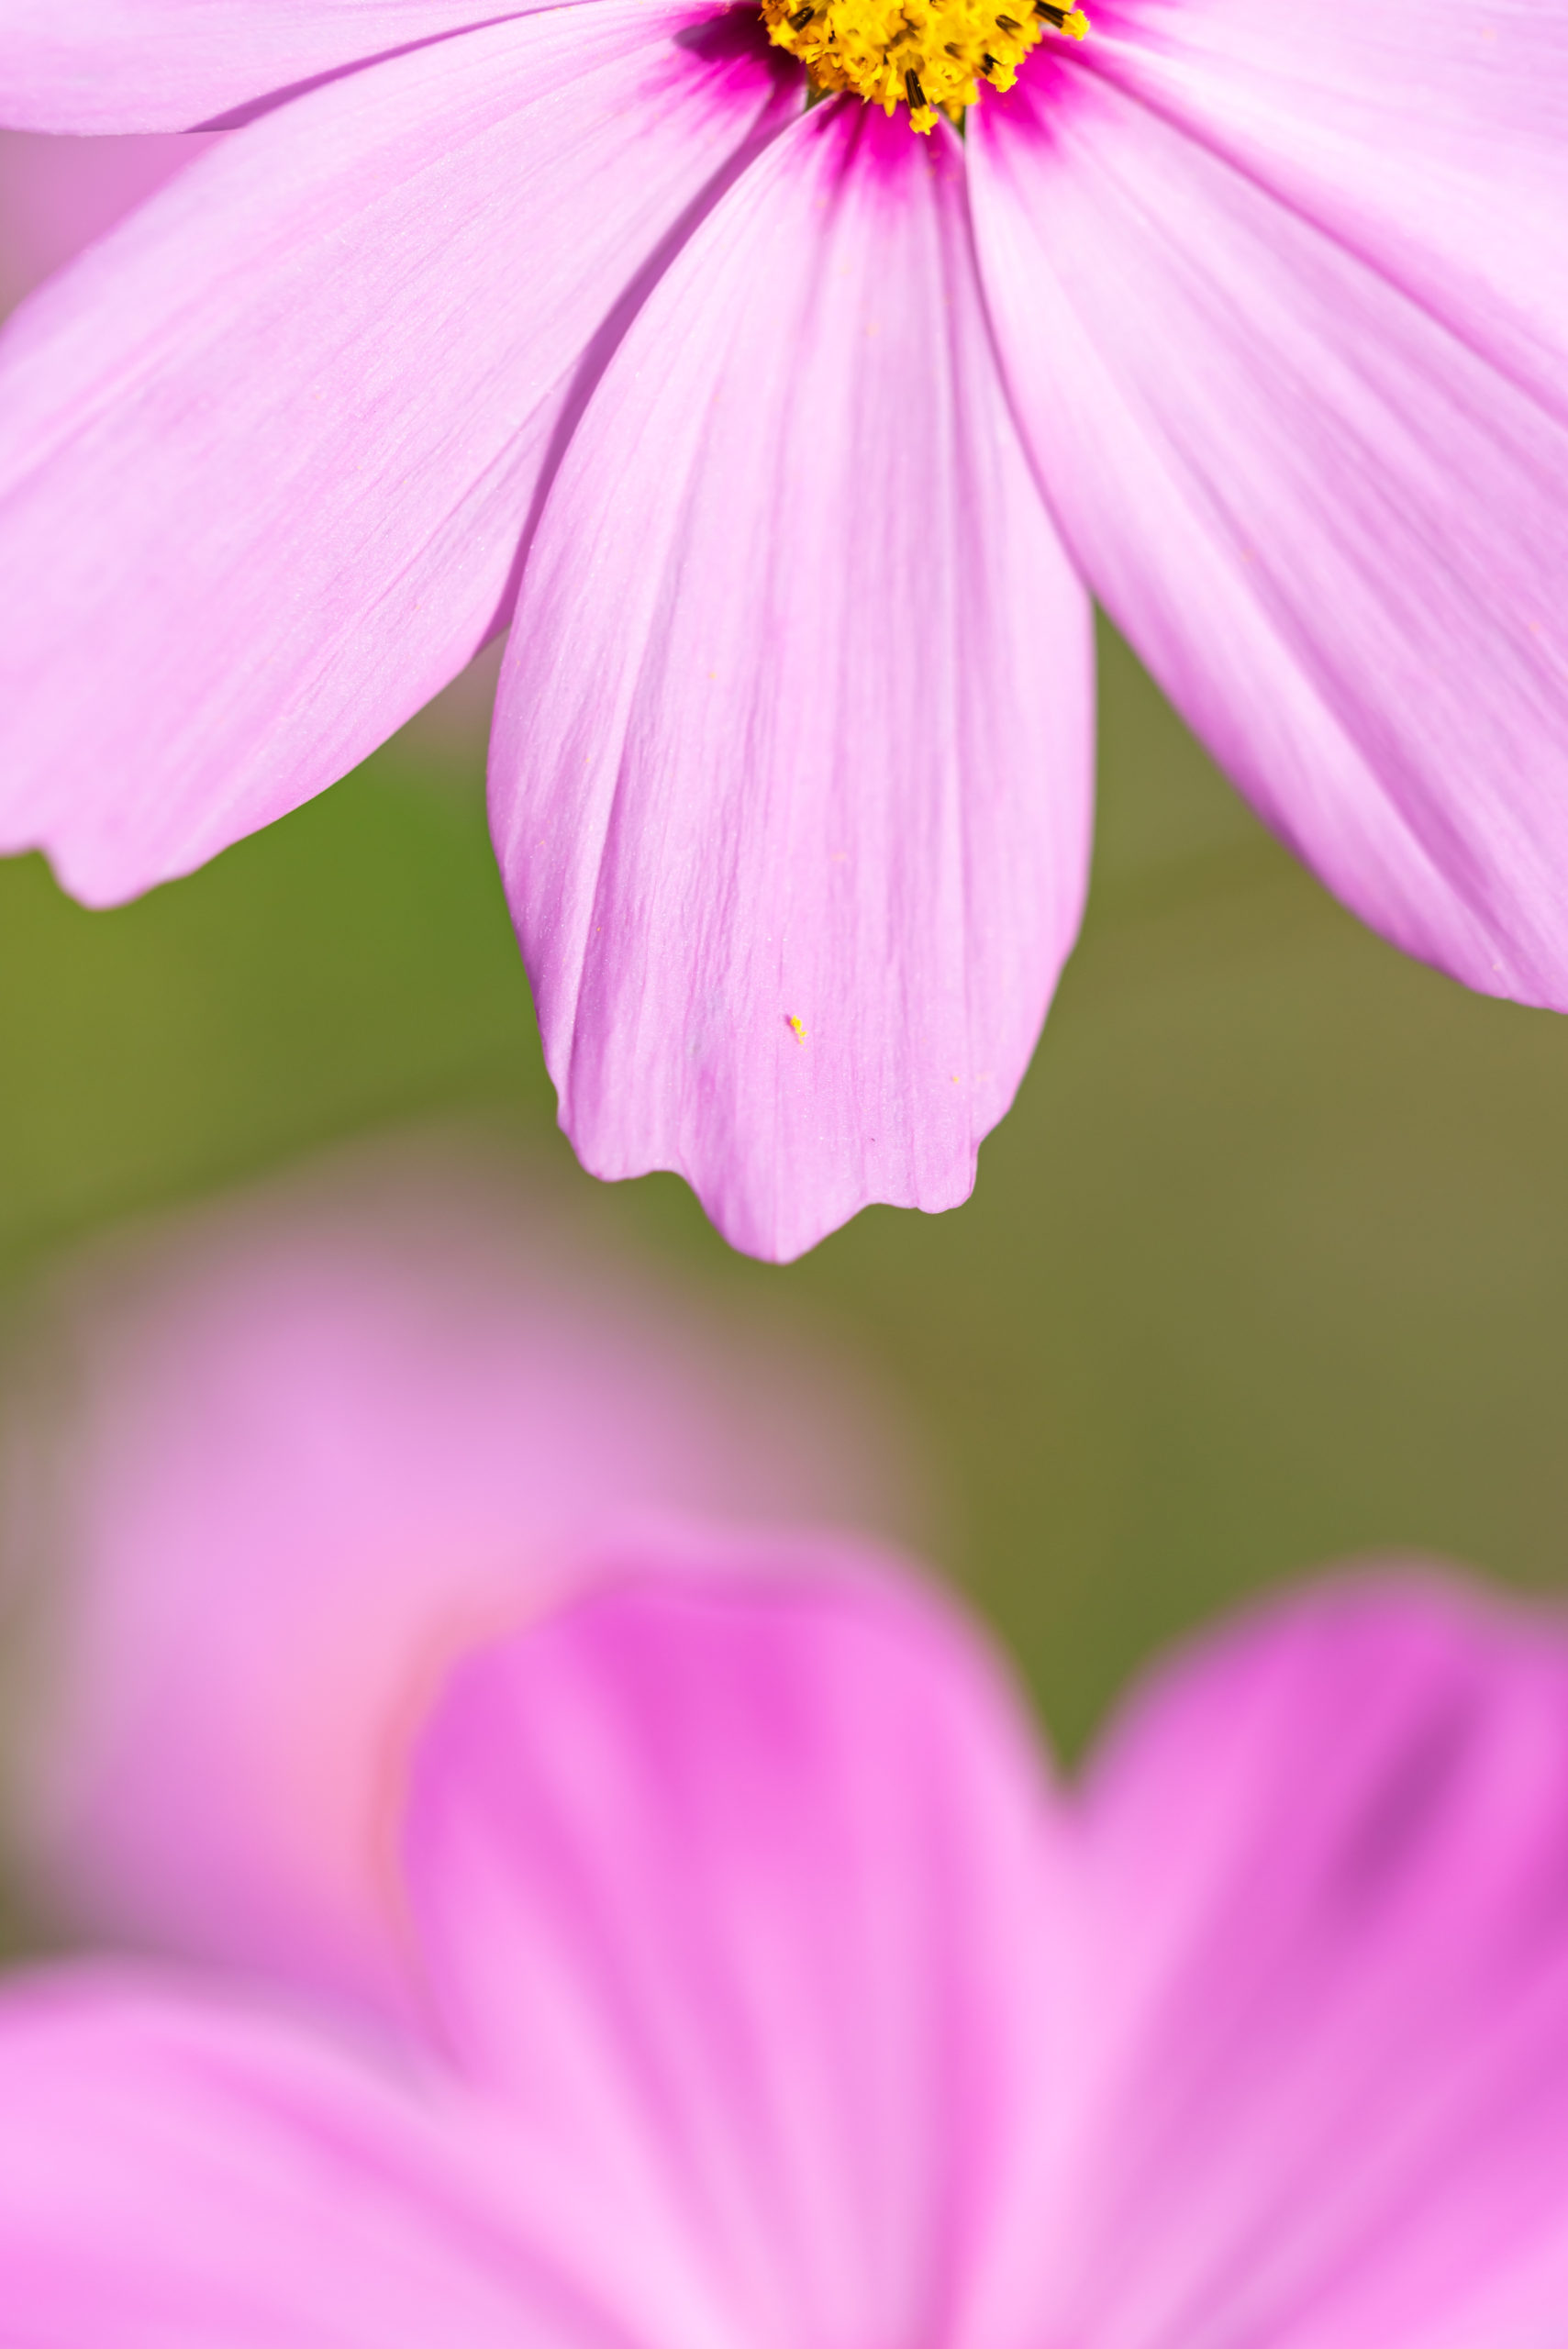 ↑の写真は限界まで絞ったおかげでコスモスの花粉と花弁がしっかり写っていてお気に入りの写真になりました。